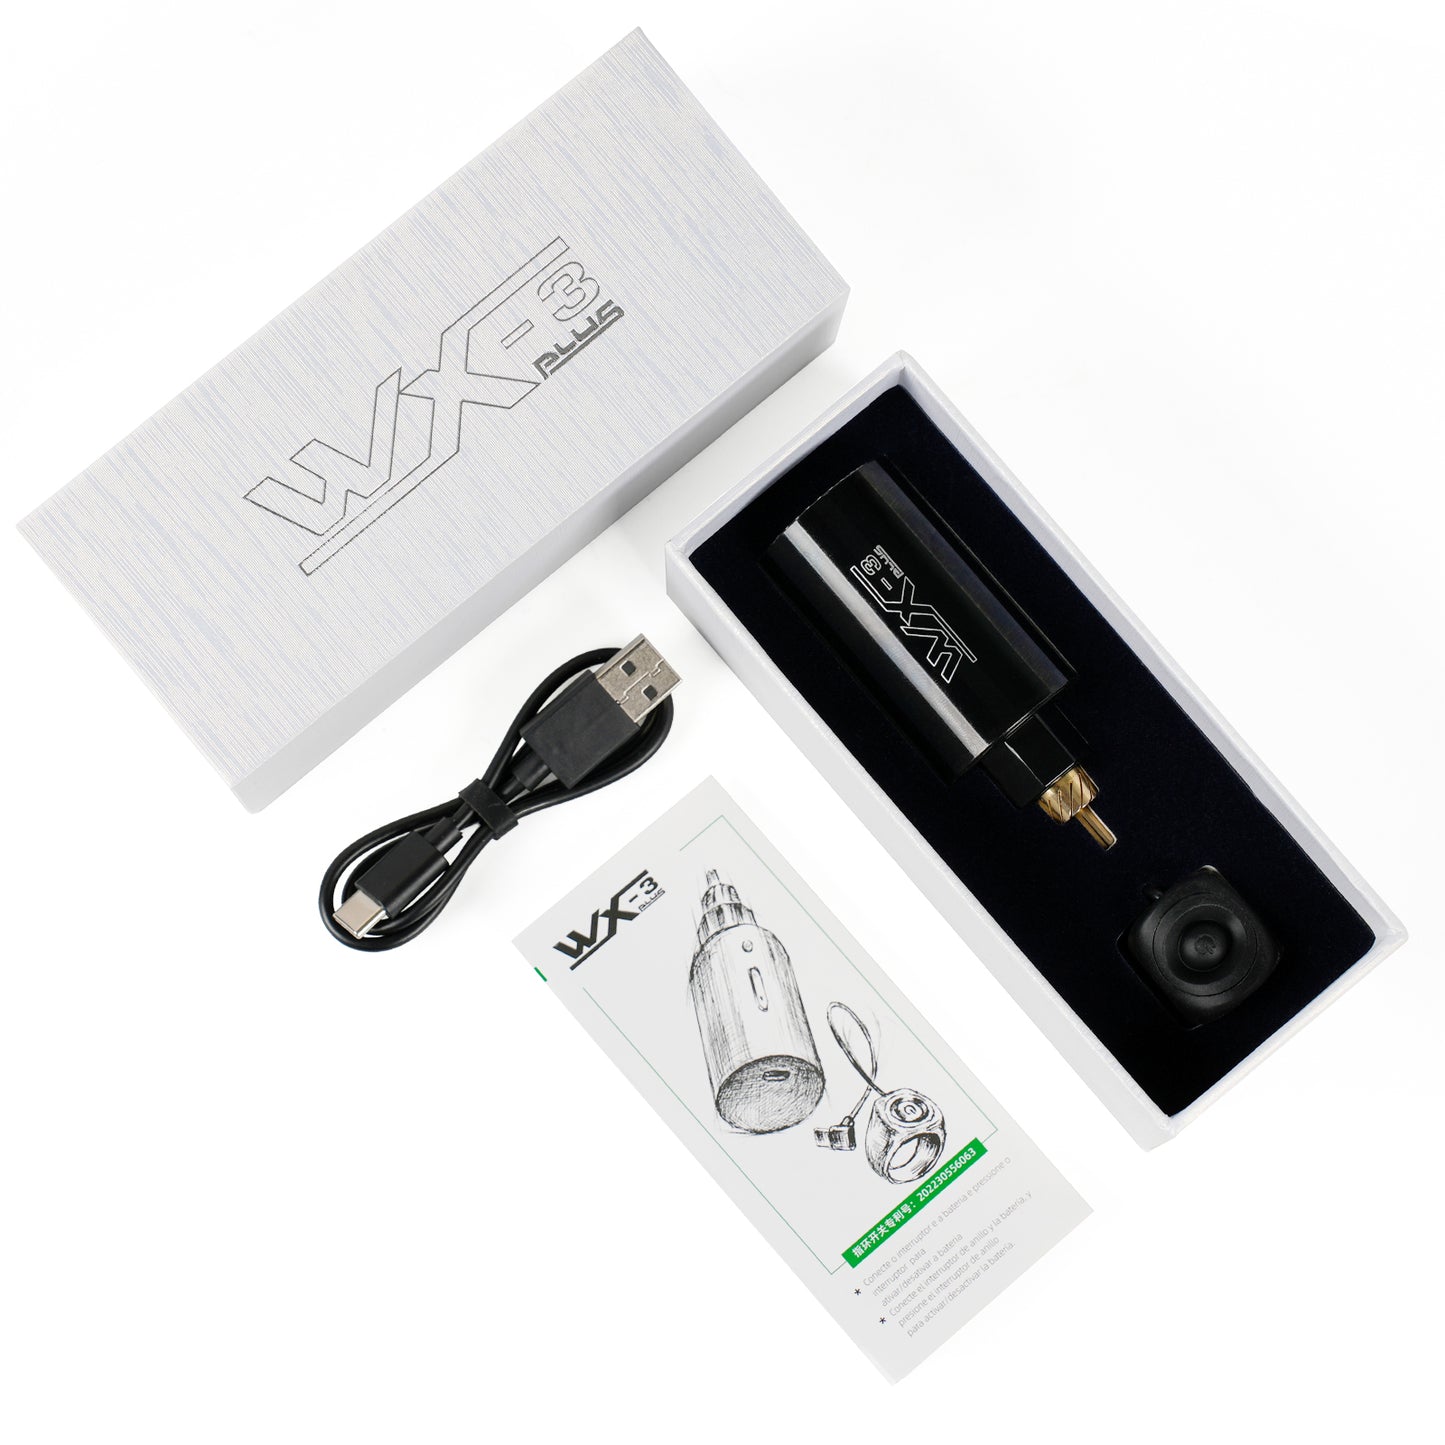 WX-3 Plus Wireless Power Supply